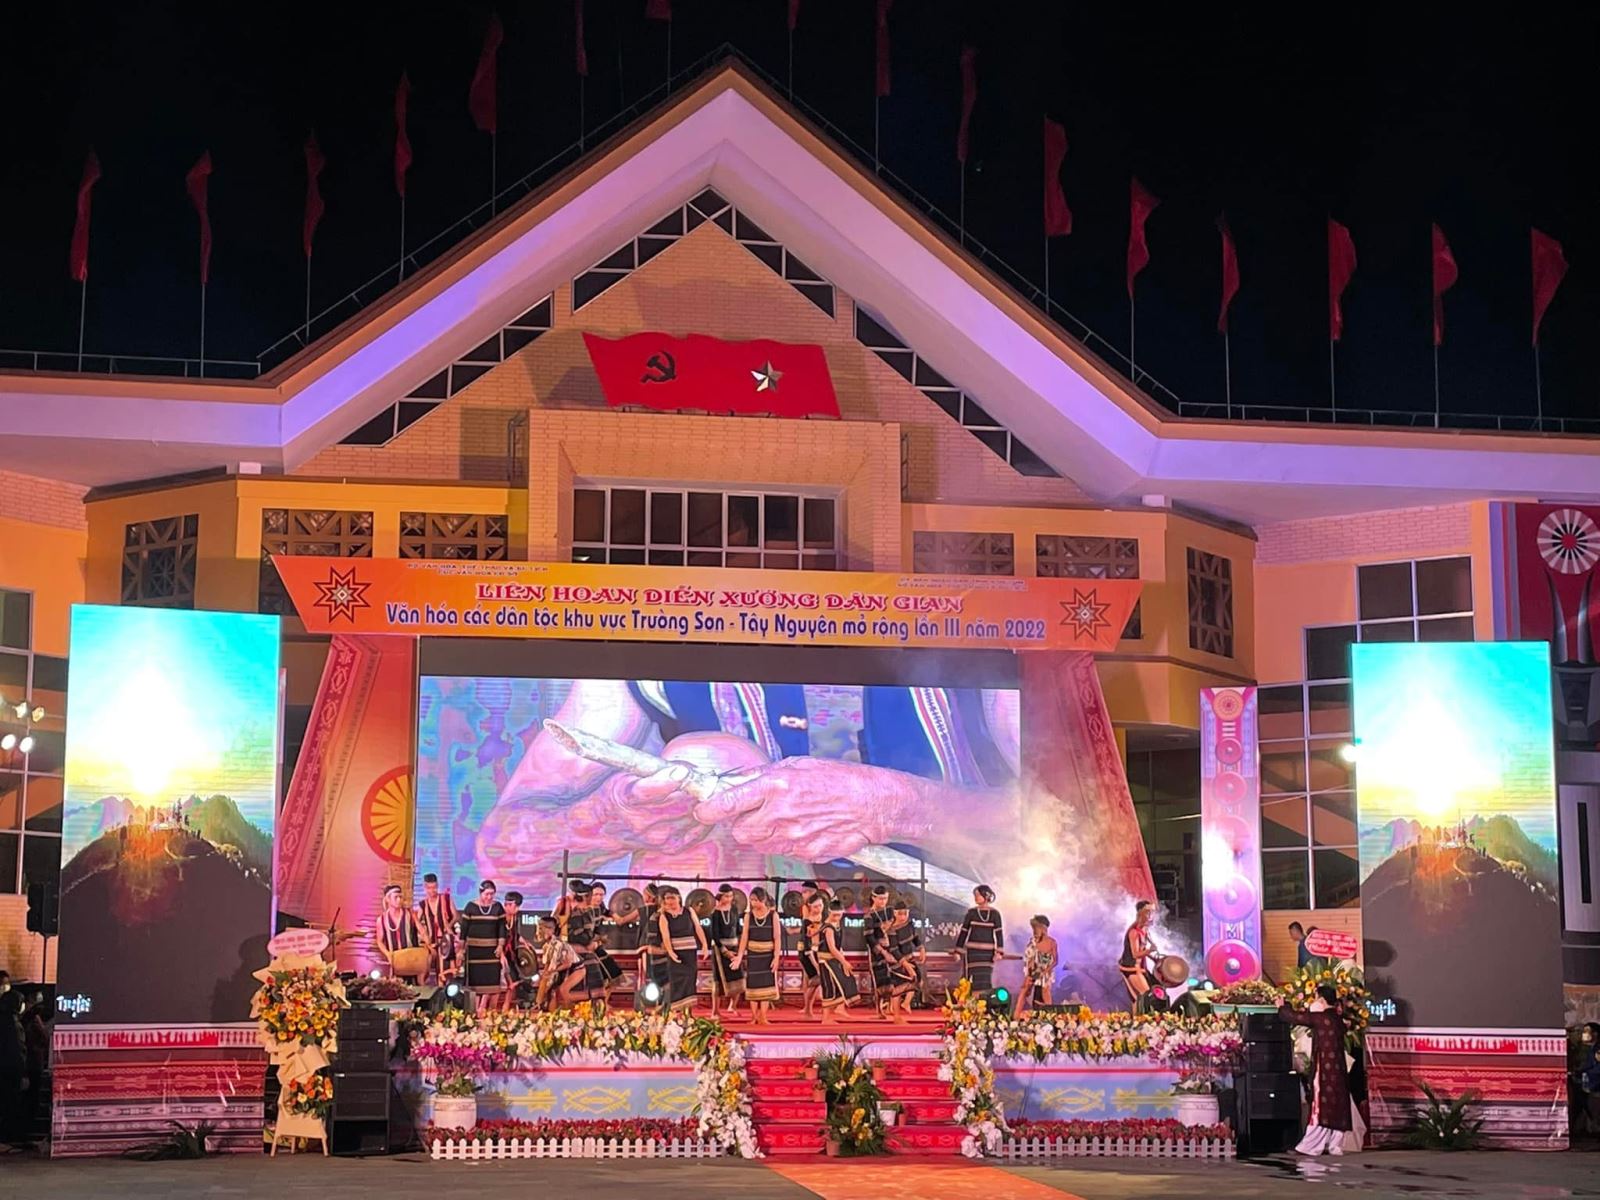 Liên hoan Diễn xướng dân gian văn hoá các dân tộc khu vực Trường Sơn - Tây Nguyên lần thứ III - năm 2022